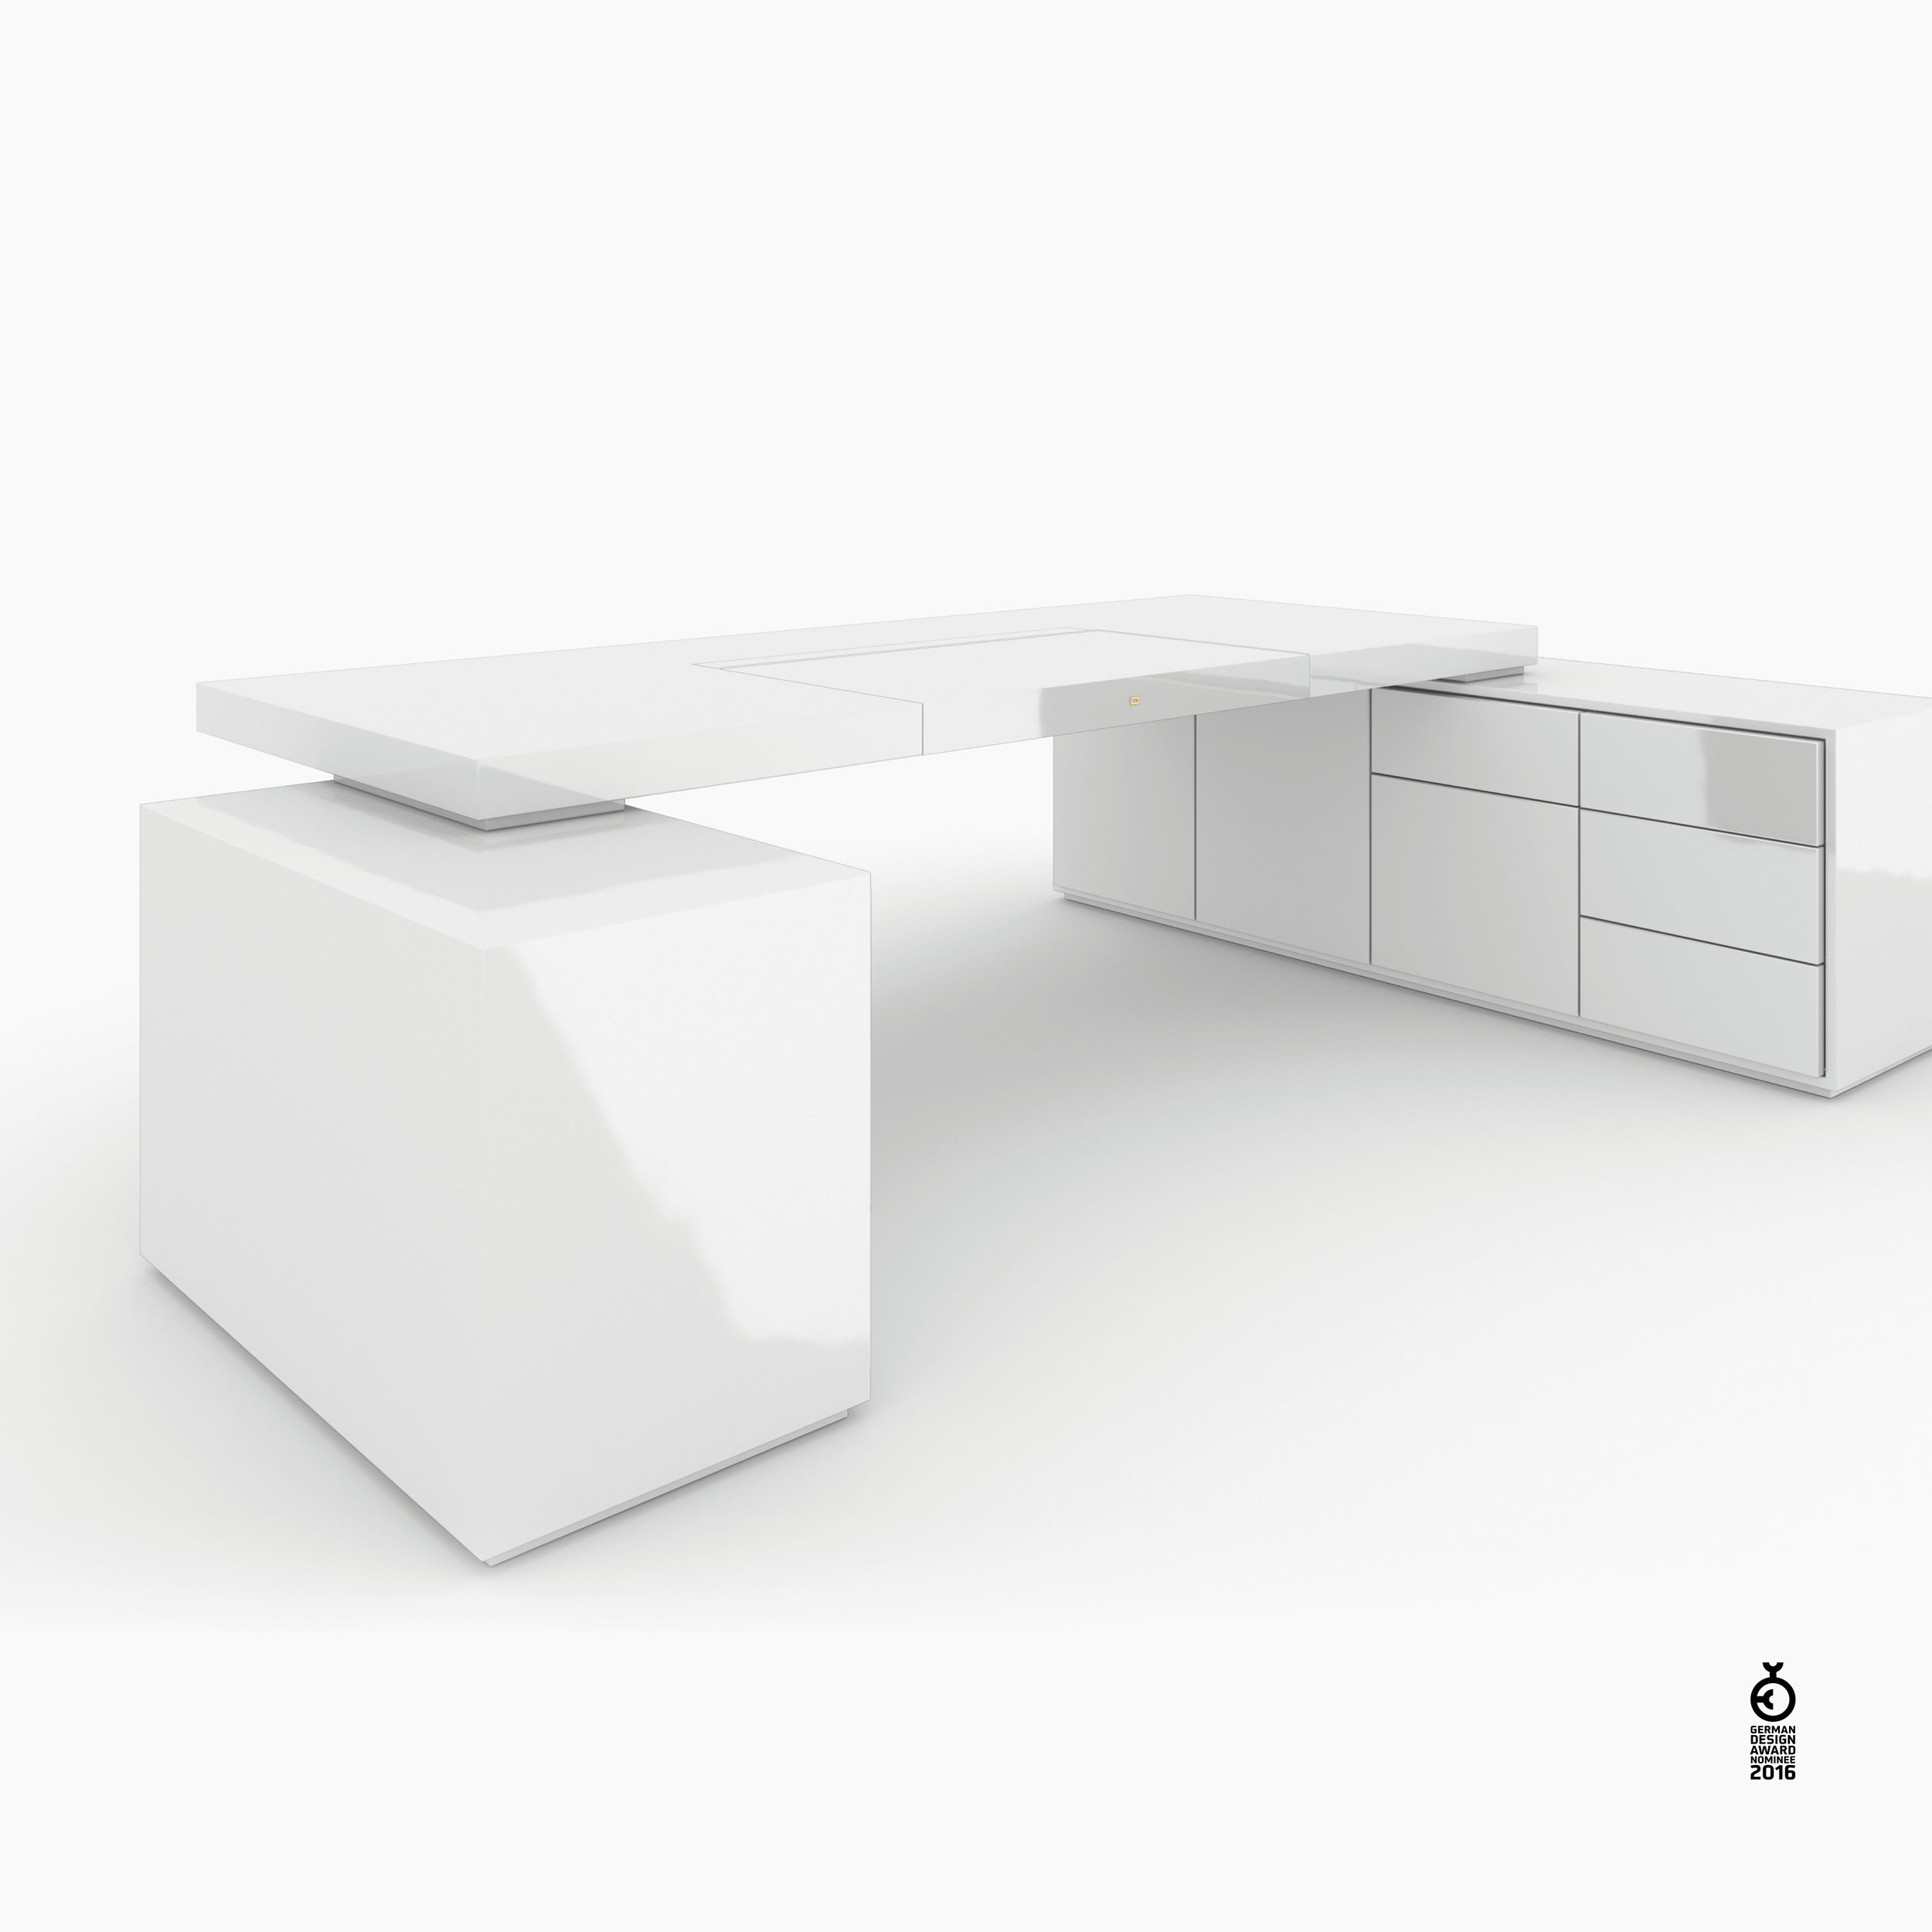 Schreibtisch scheiben und quader weiss bed room Chefzimmer minimalist design Schreibtische FS 95 FELIX SCHWAKE